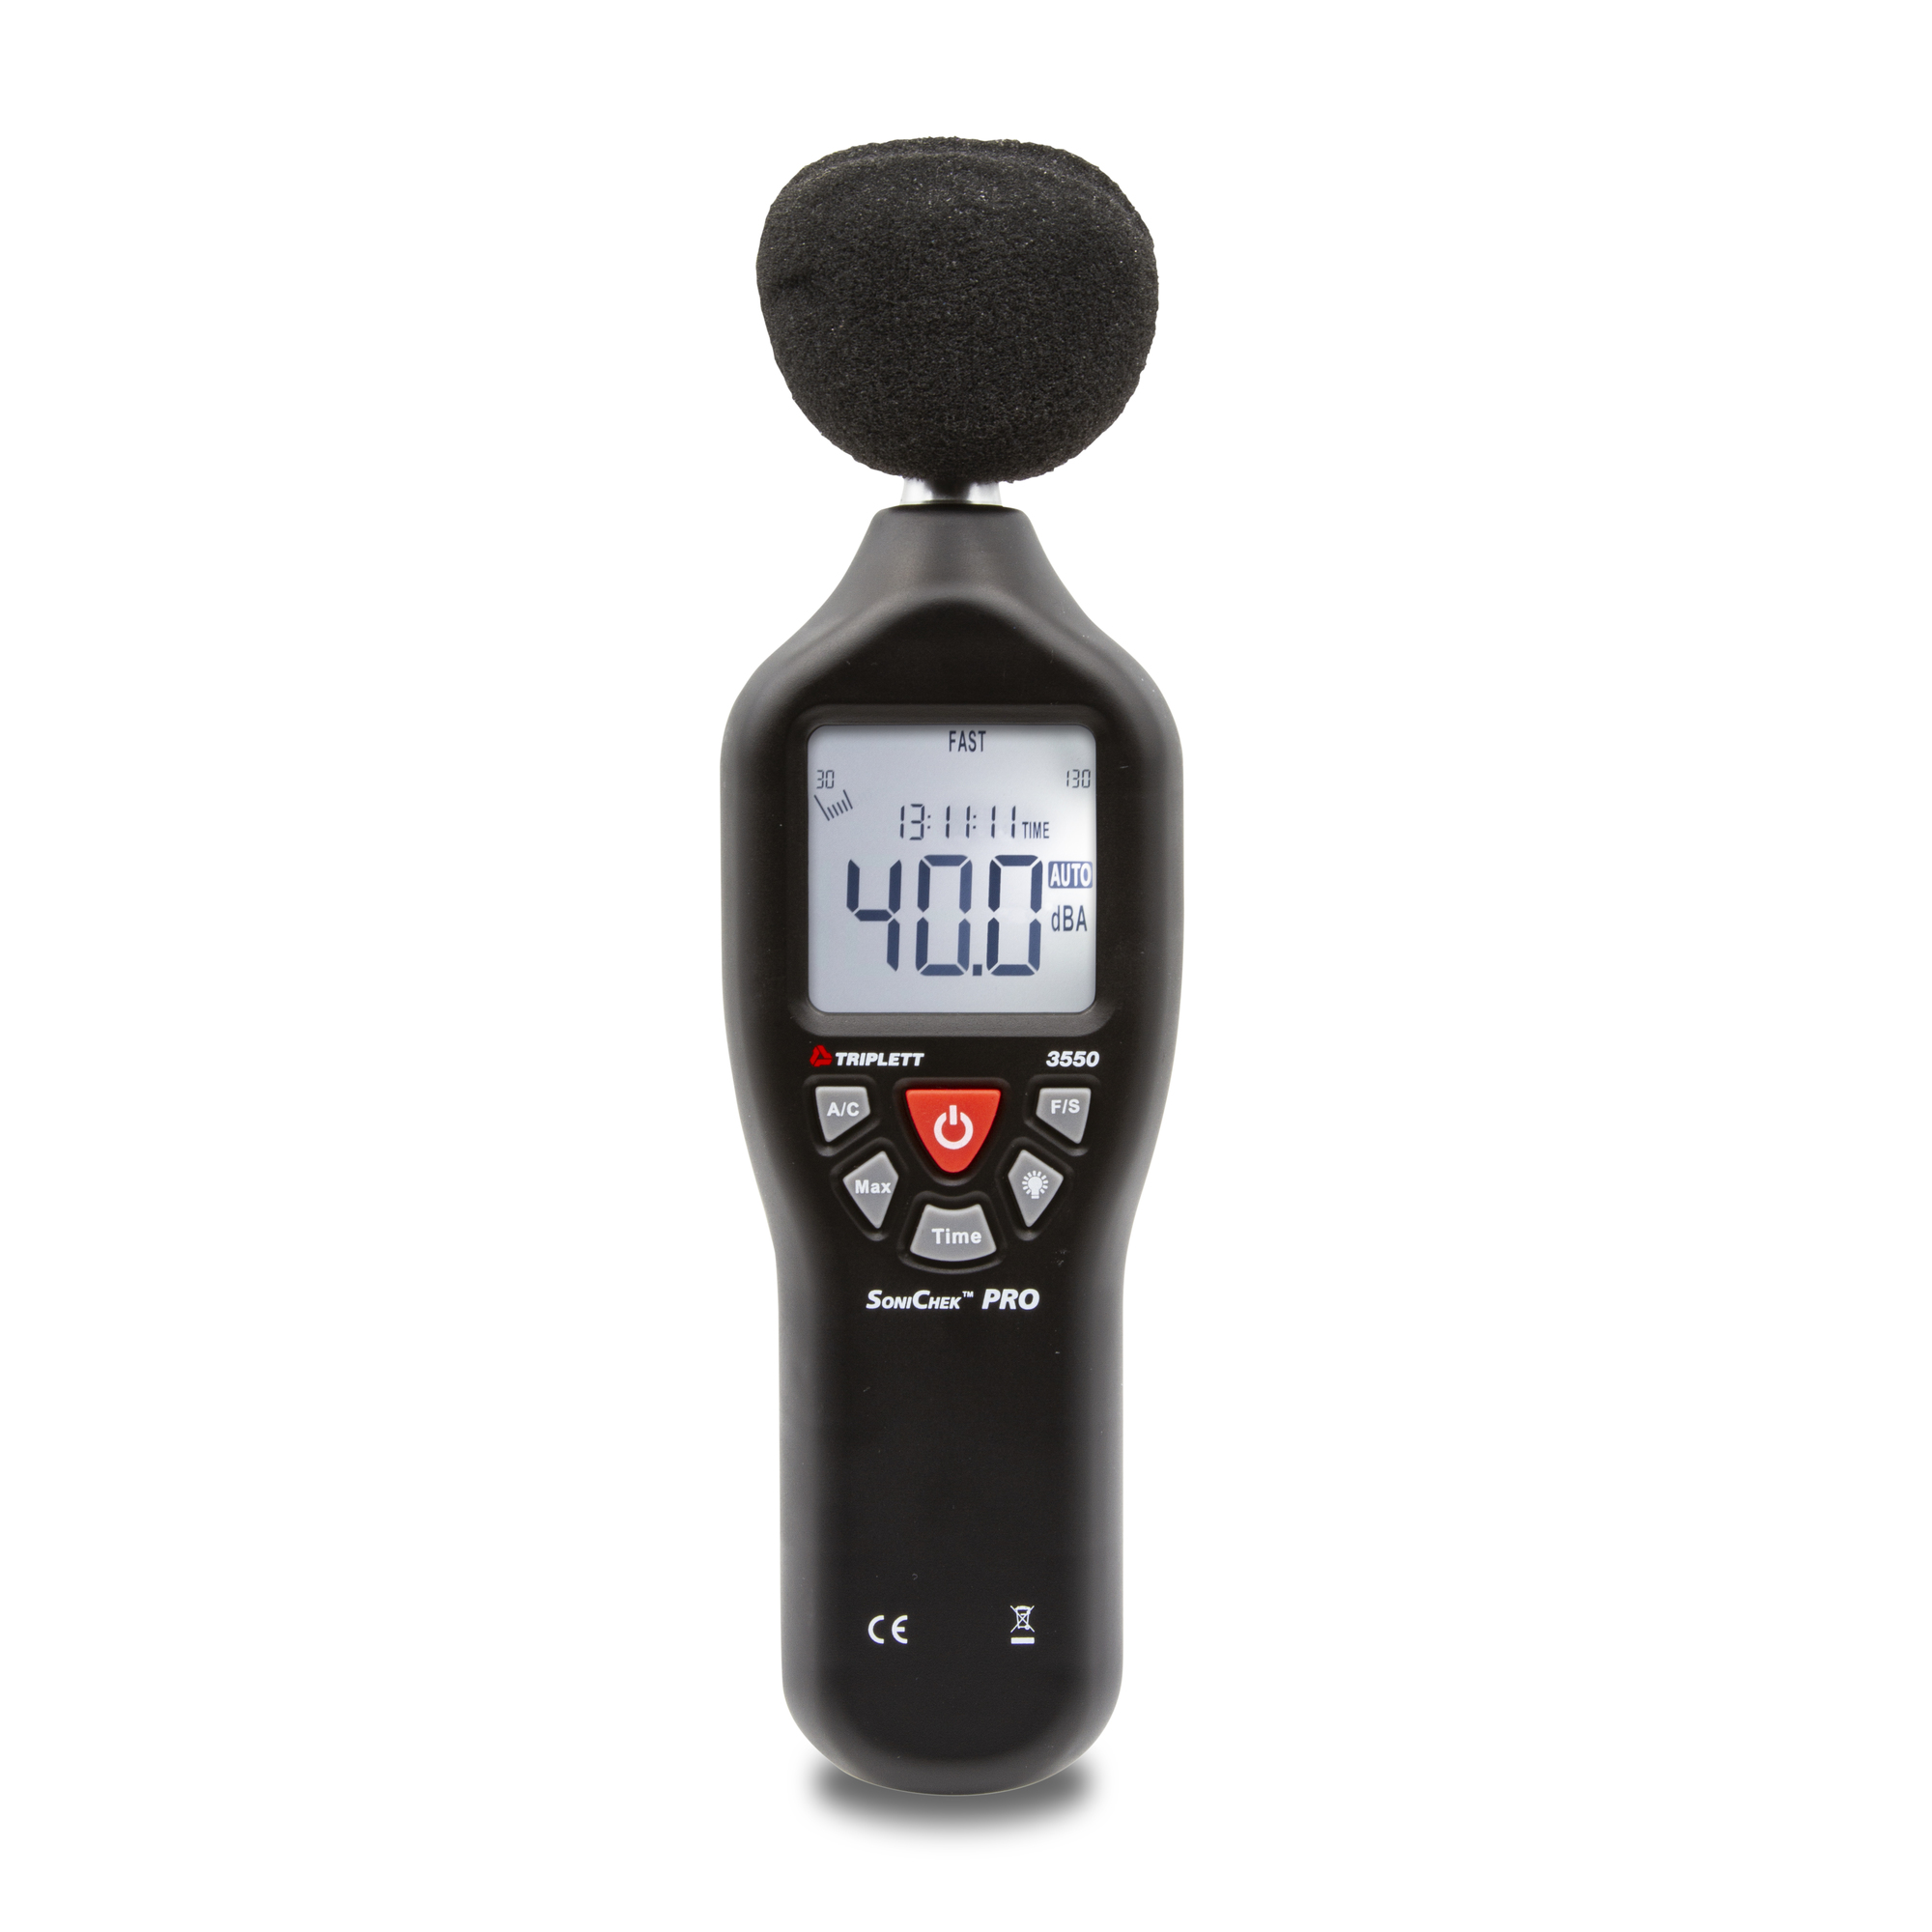 Triplett, Professional Sound Level Meter, Model 3550